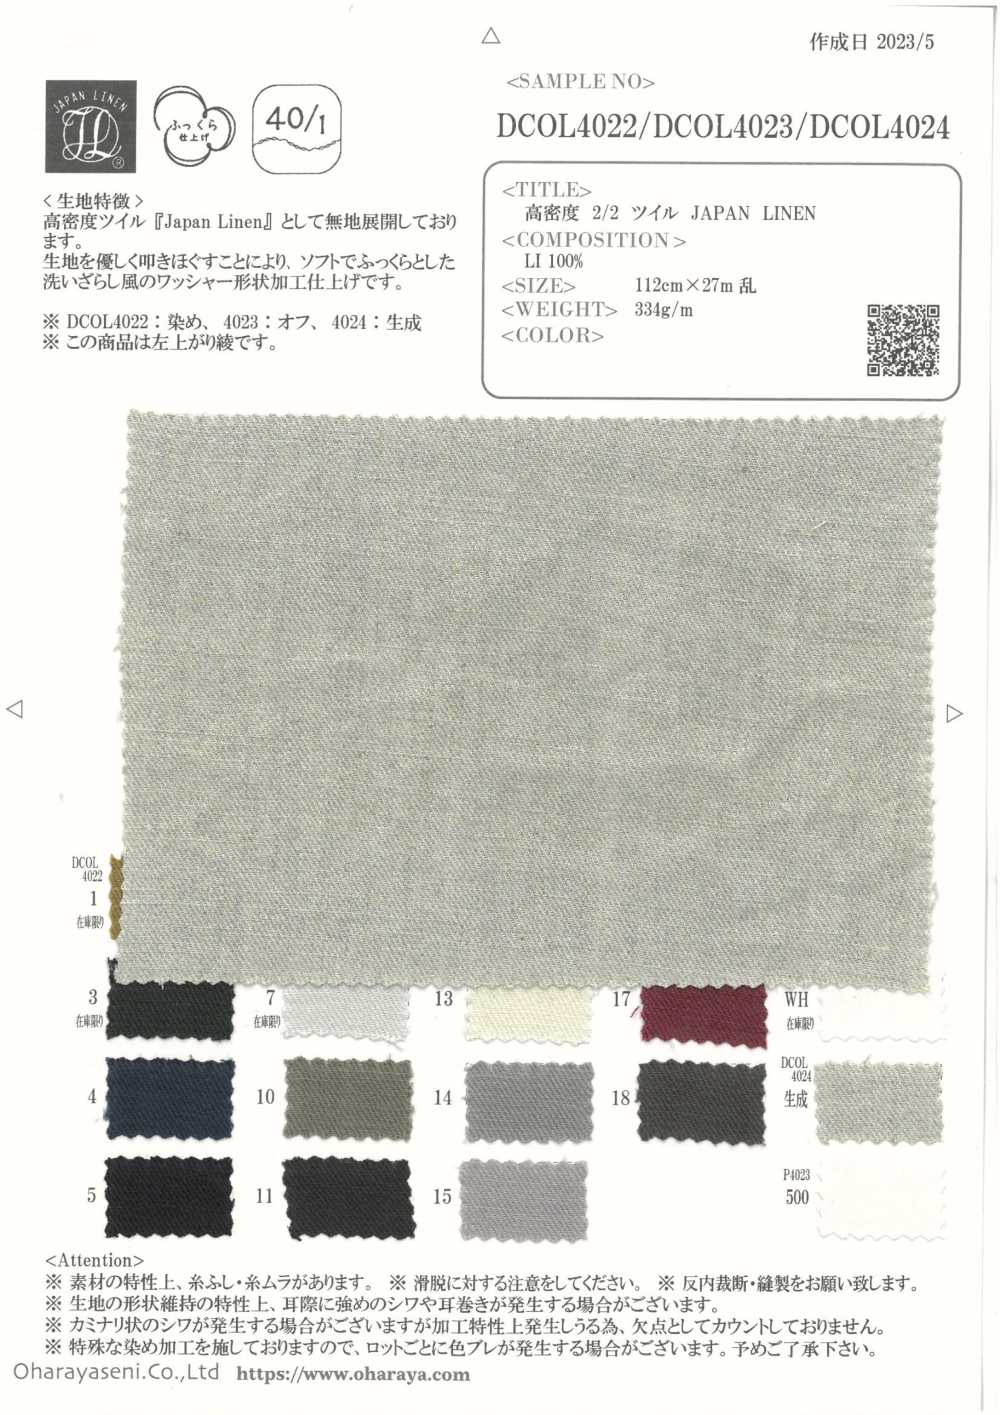 DCOL4022 LINHO JAPÃO DE Sarja 2/2 De Alta Densidade[Têxtil / Tecido] Oharayaseni